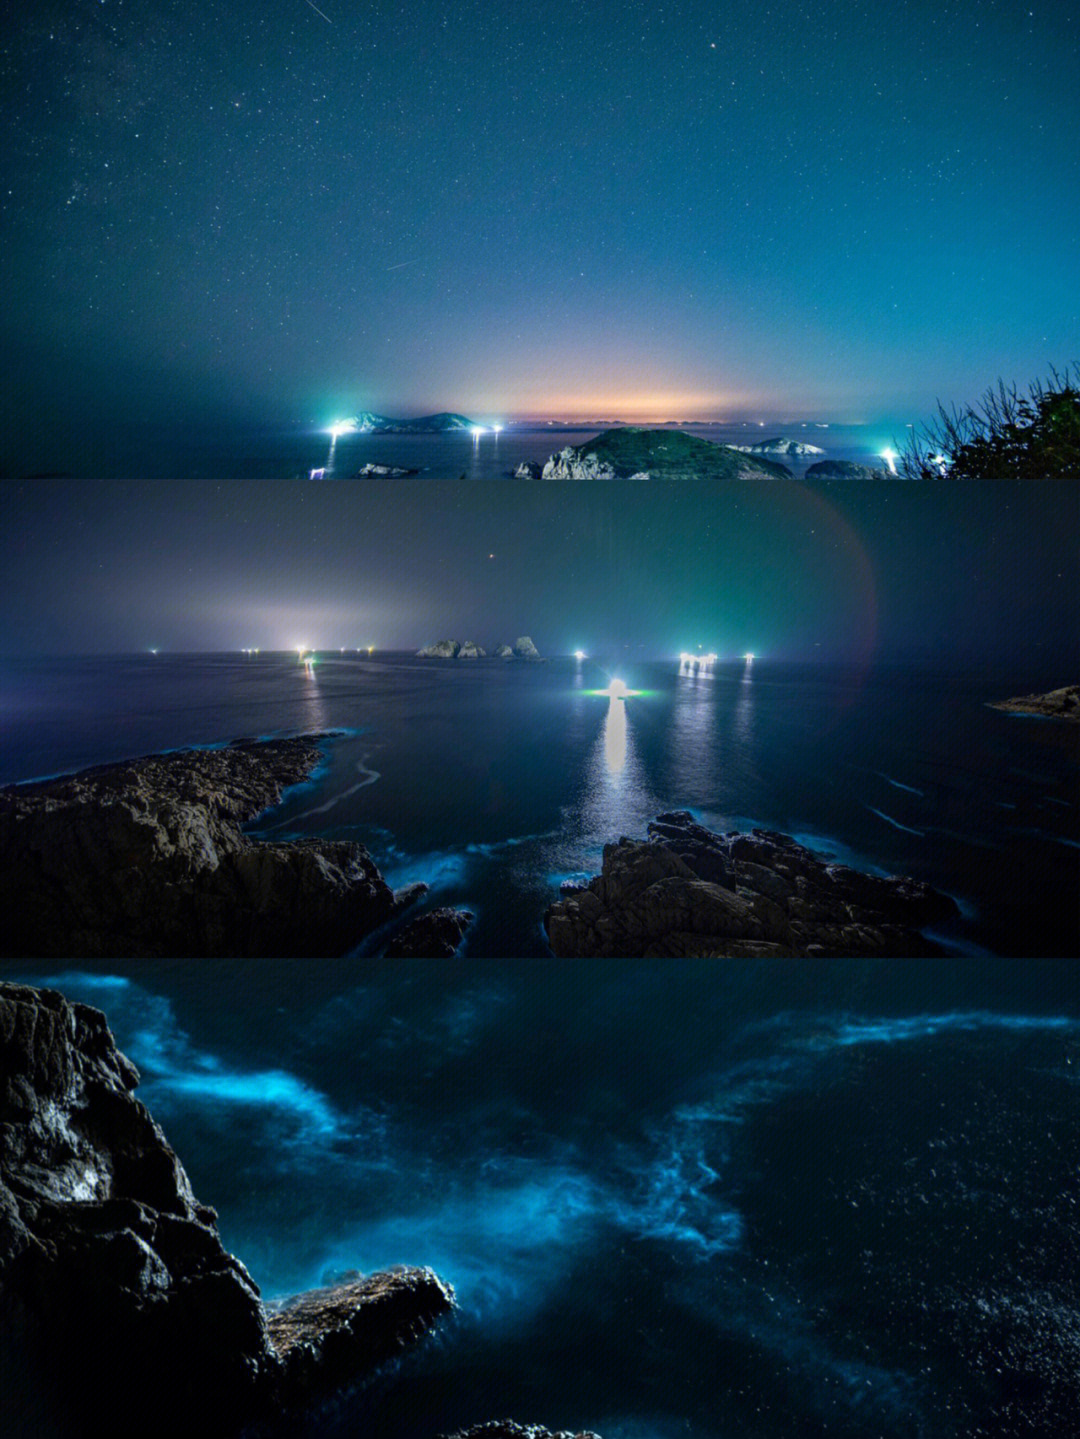 渔山岛夜景图片